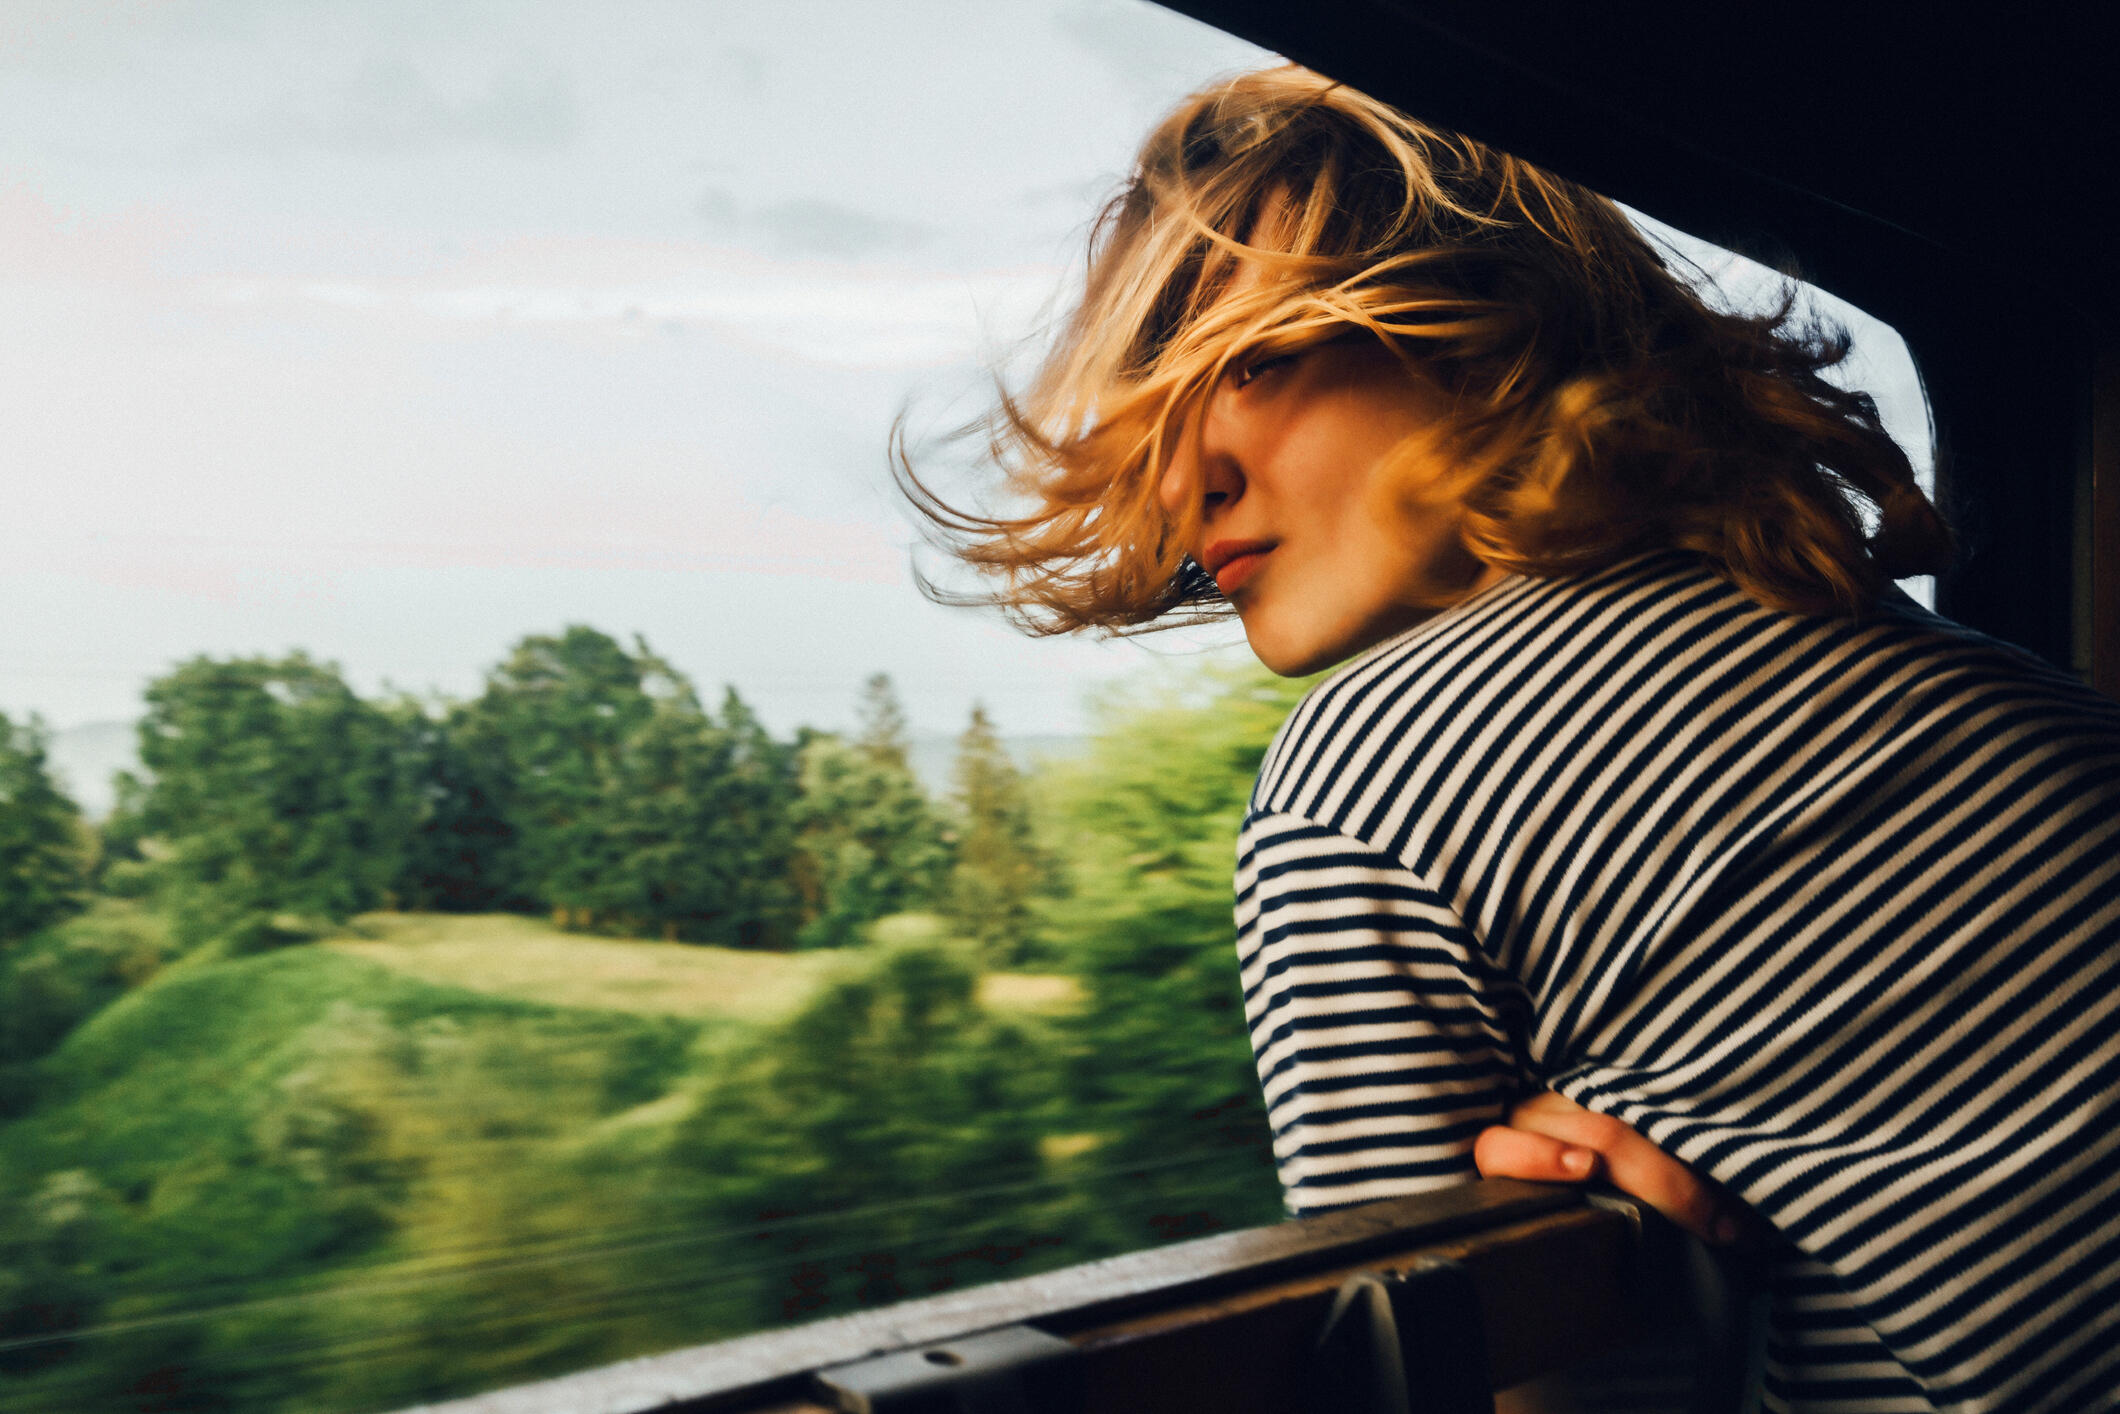 Eine junge Frau lehnt sich aus dem Fenster eines fahrenden Zuges und blickt in die Landschaft.